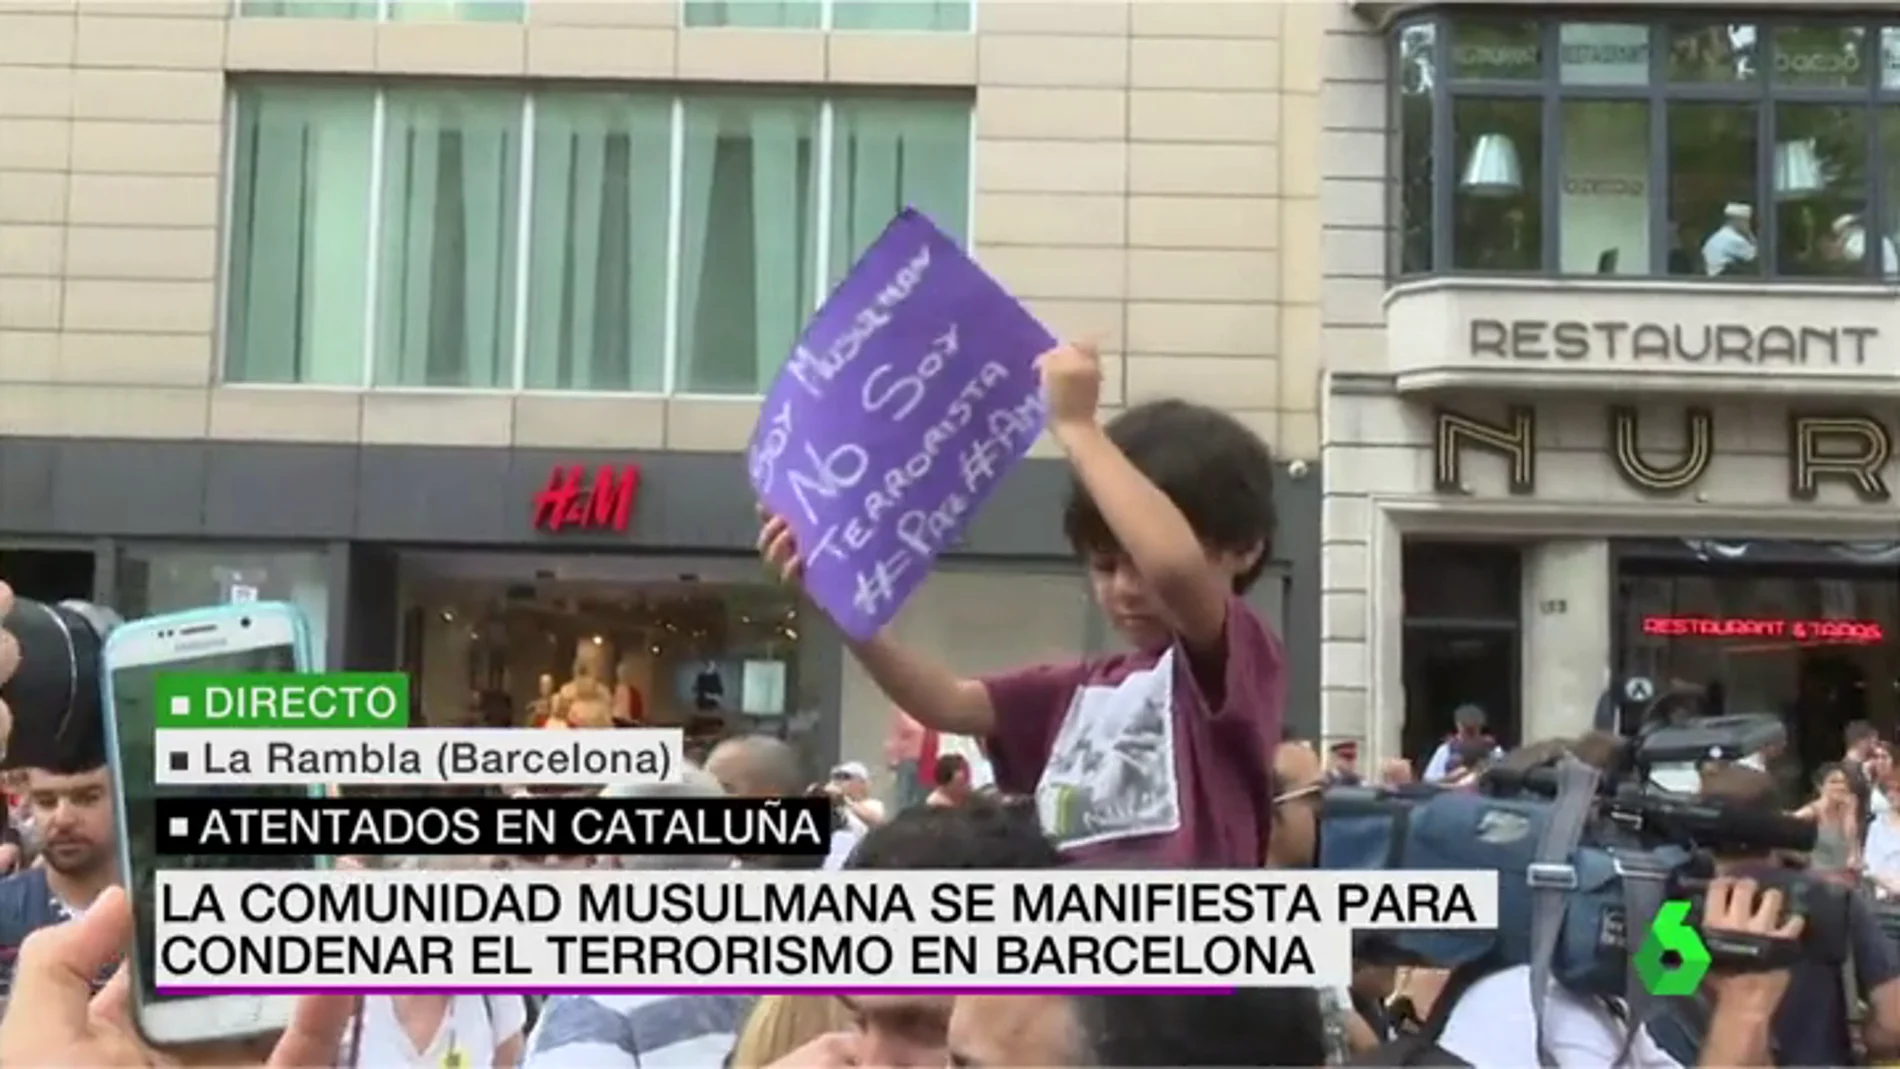 Un niño sostiene una pancarta que reza: "Soy musulmán, no soy terrorista"